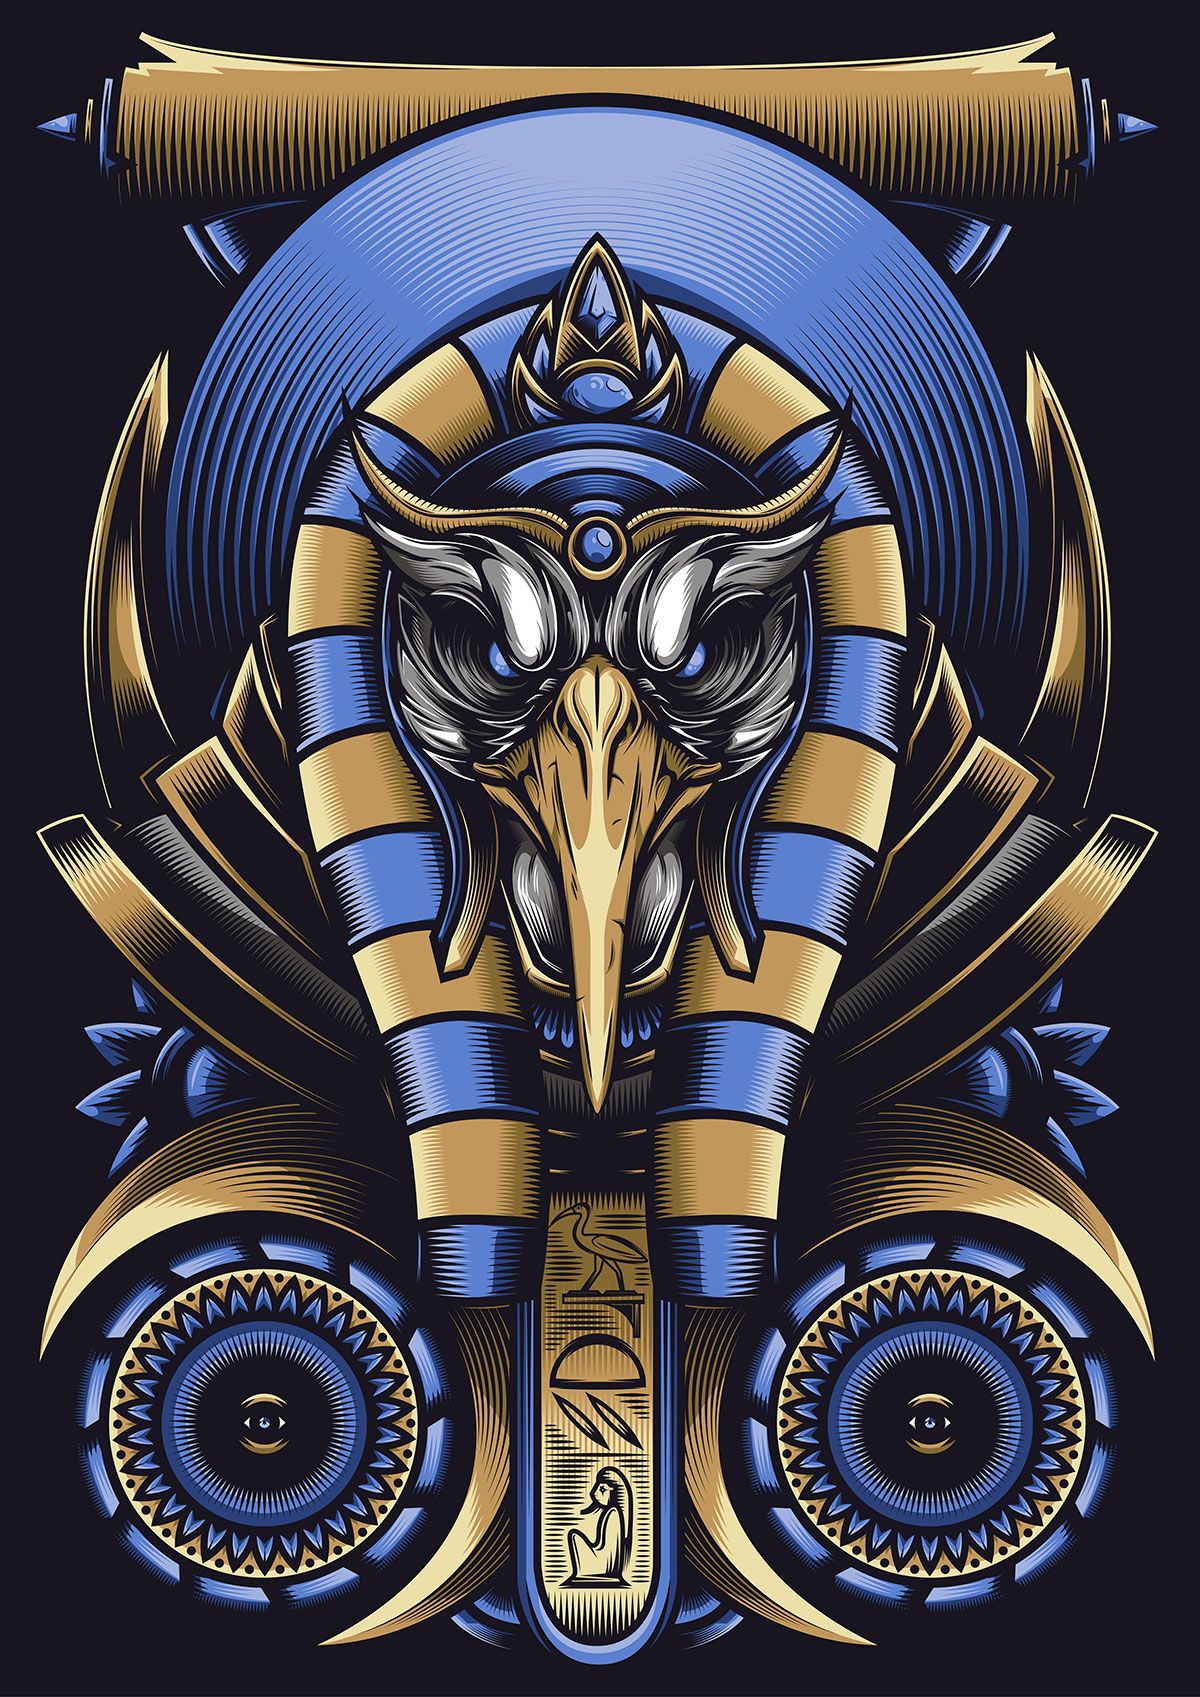 Египетский Бог Осирис тату